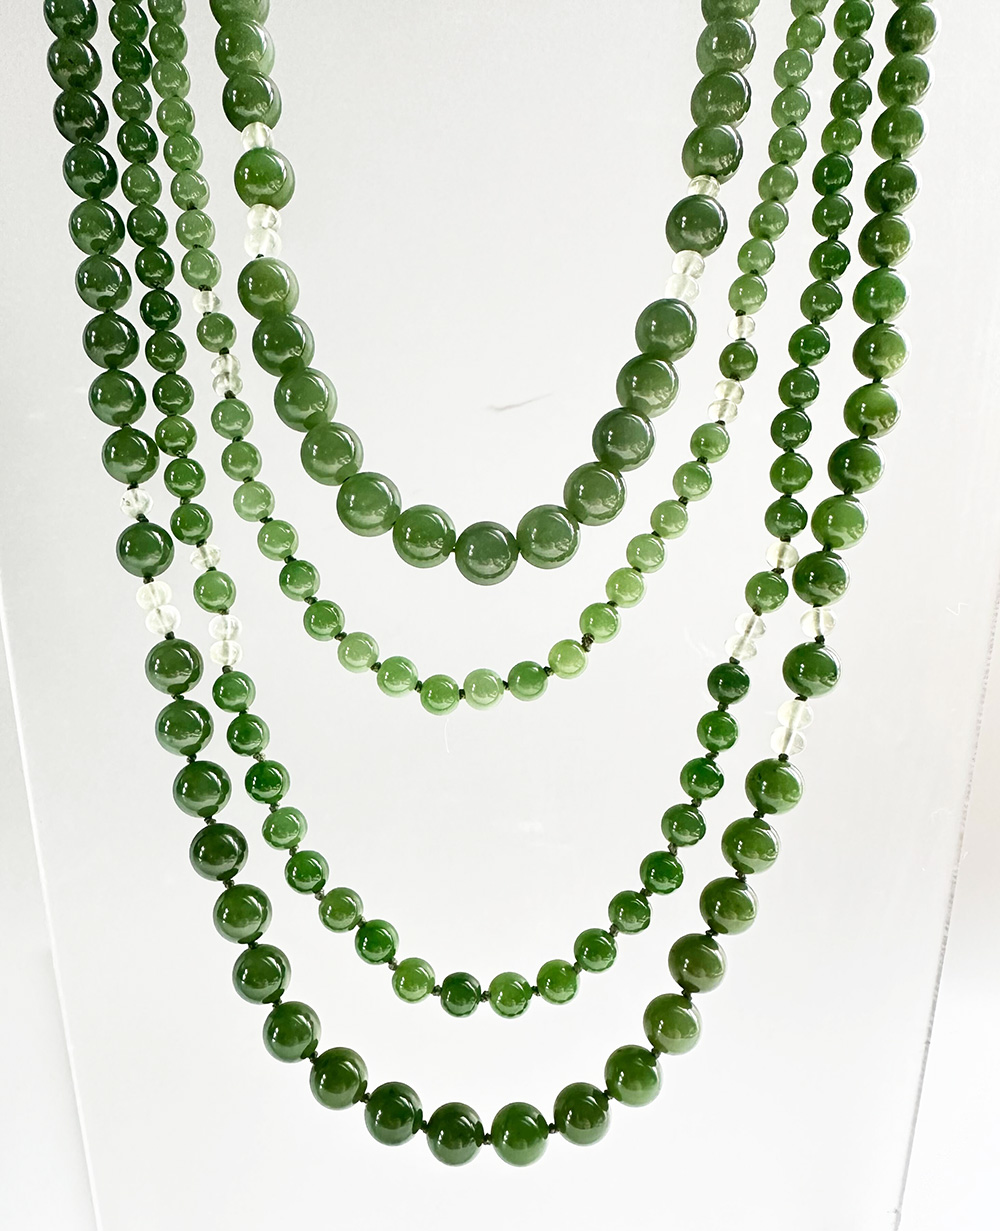 Spiral Nephrite Jade Necklace